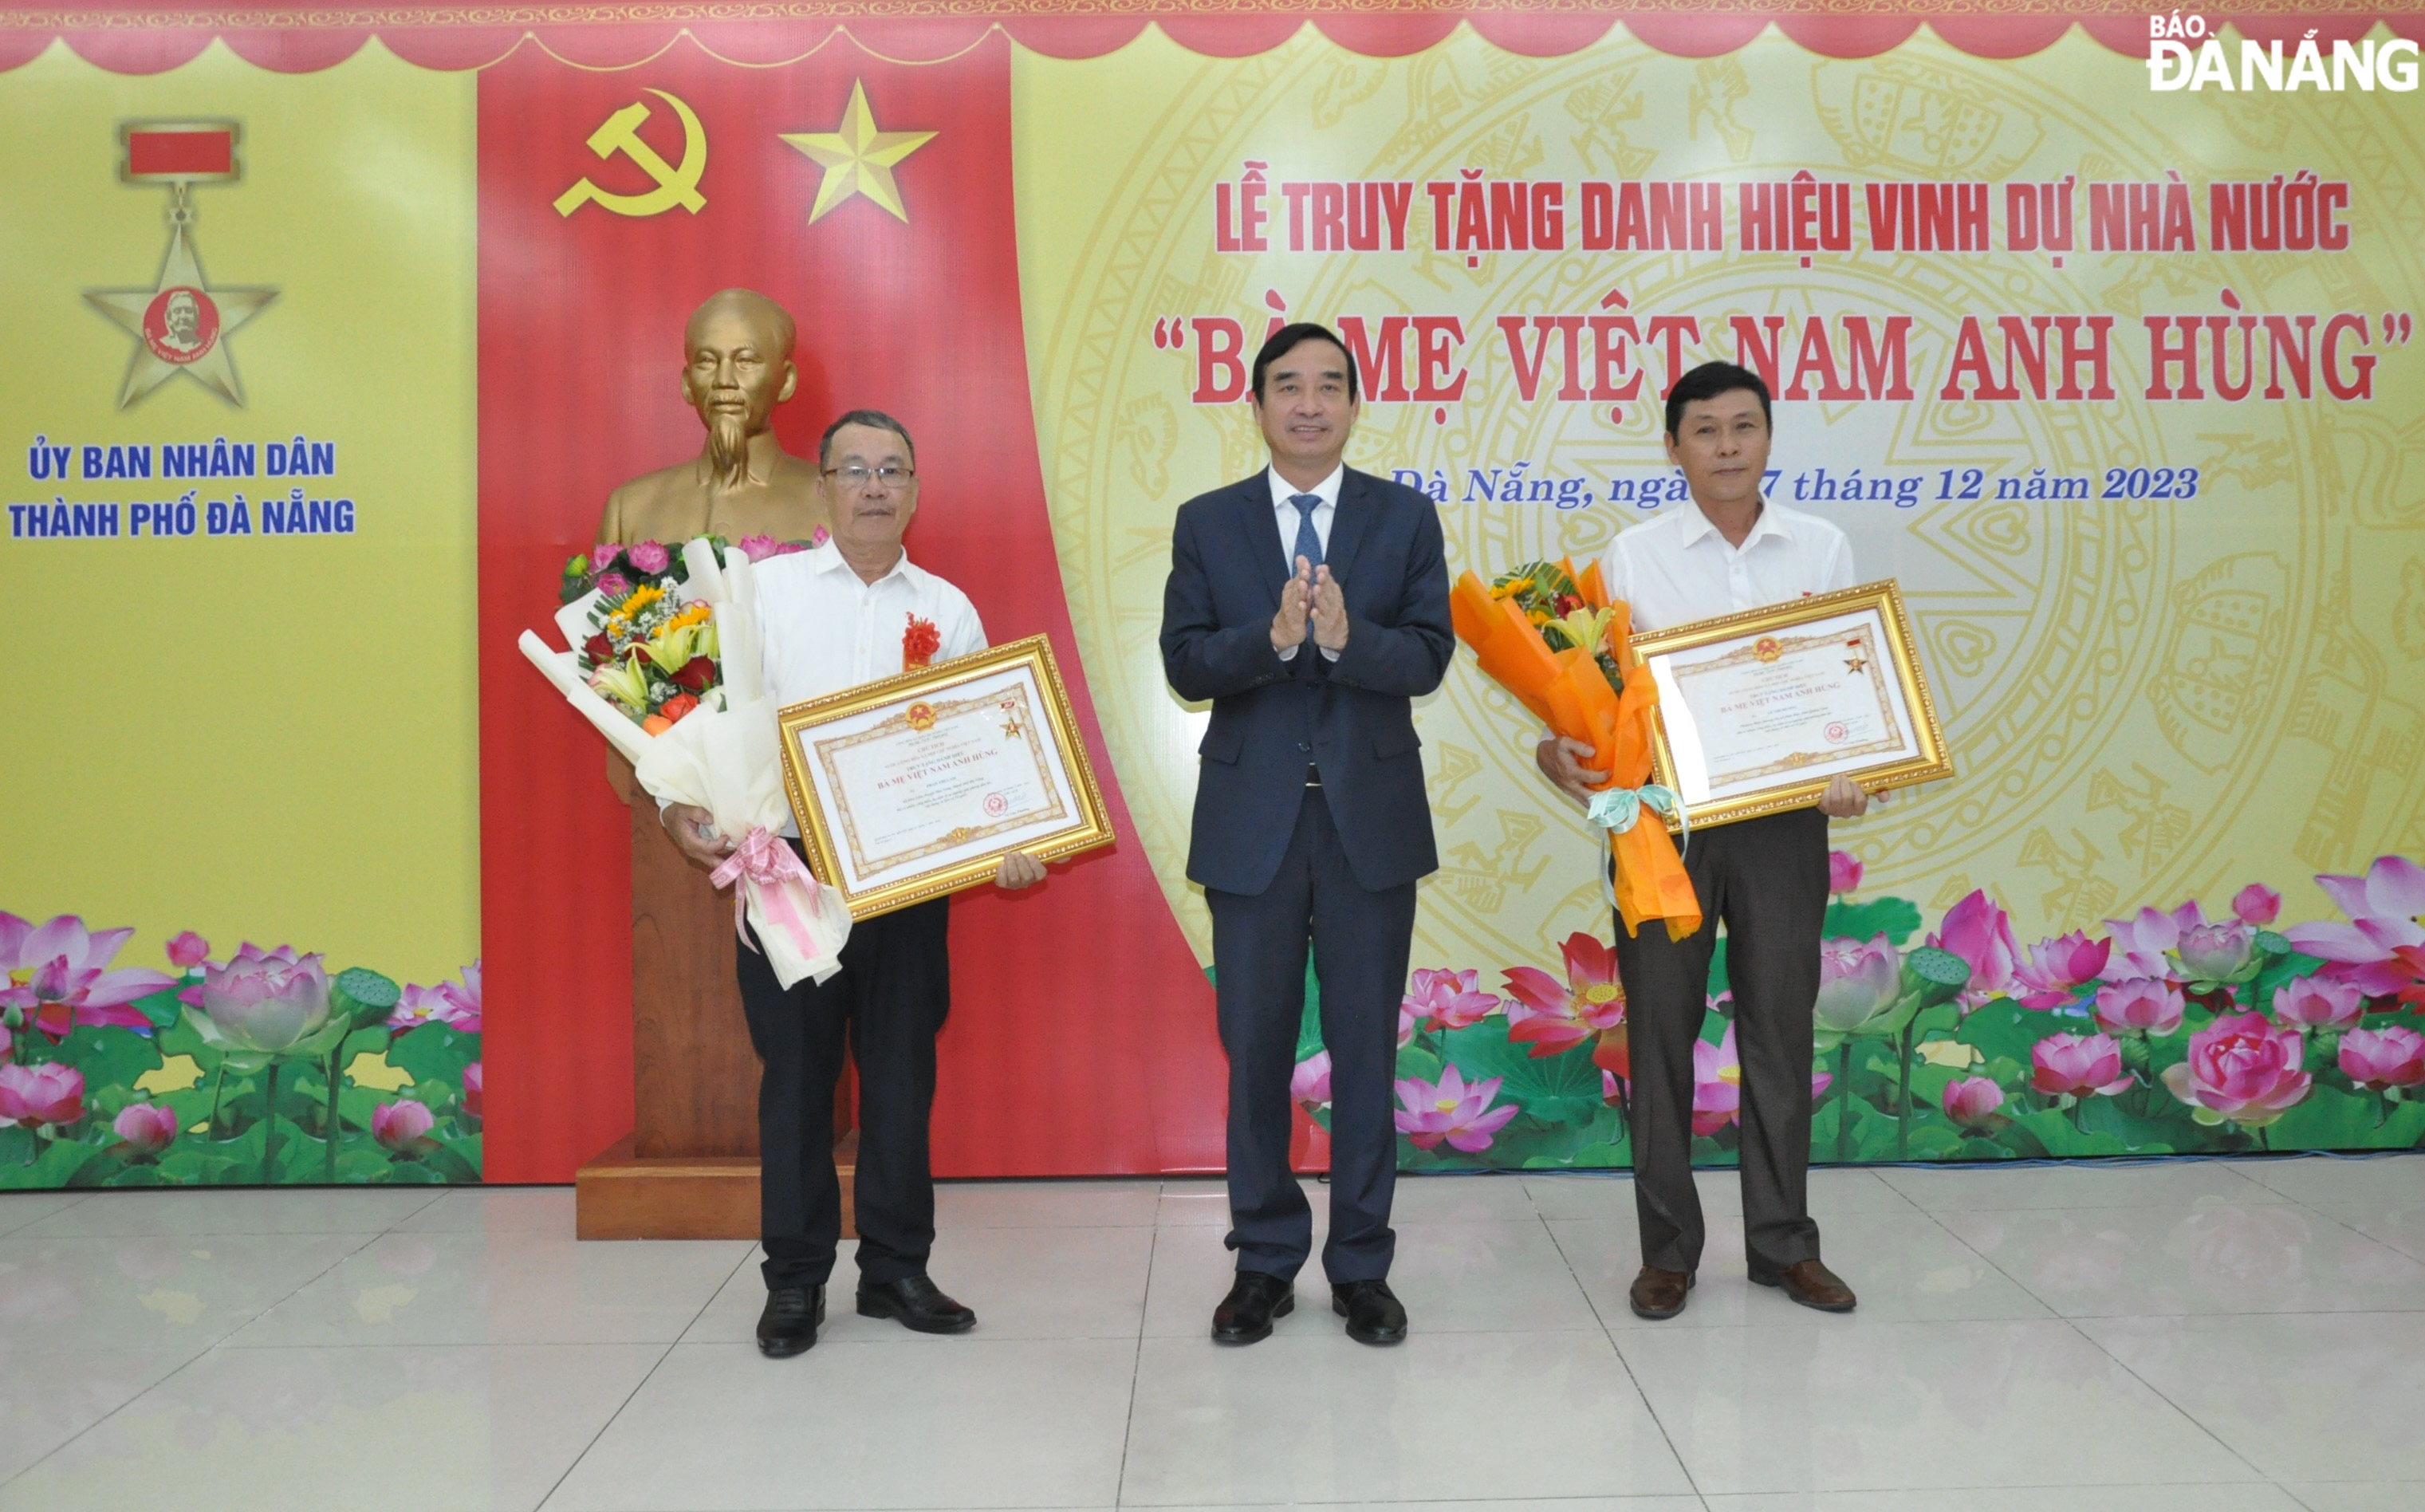 Truy tặng danh hiệu Bà mẹ Việt Nam anh hùng cho 6 cá nhân